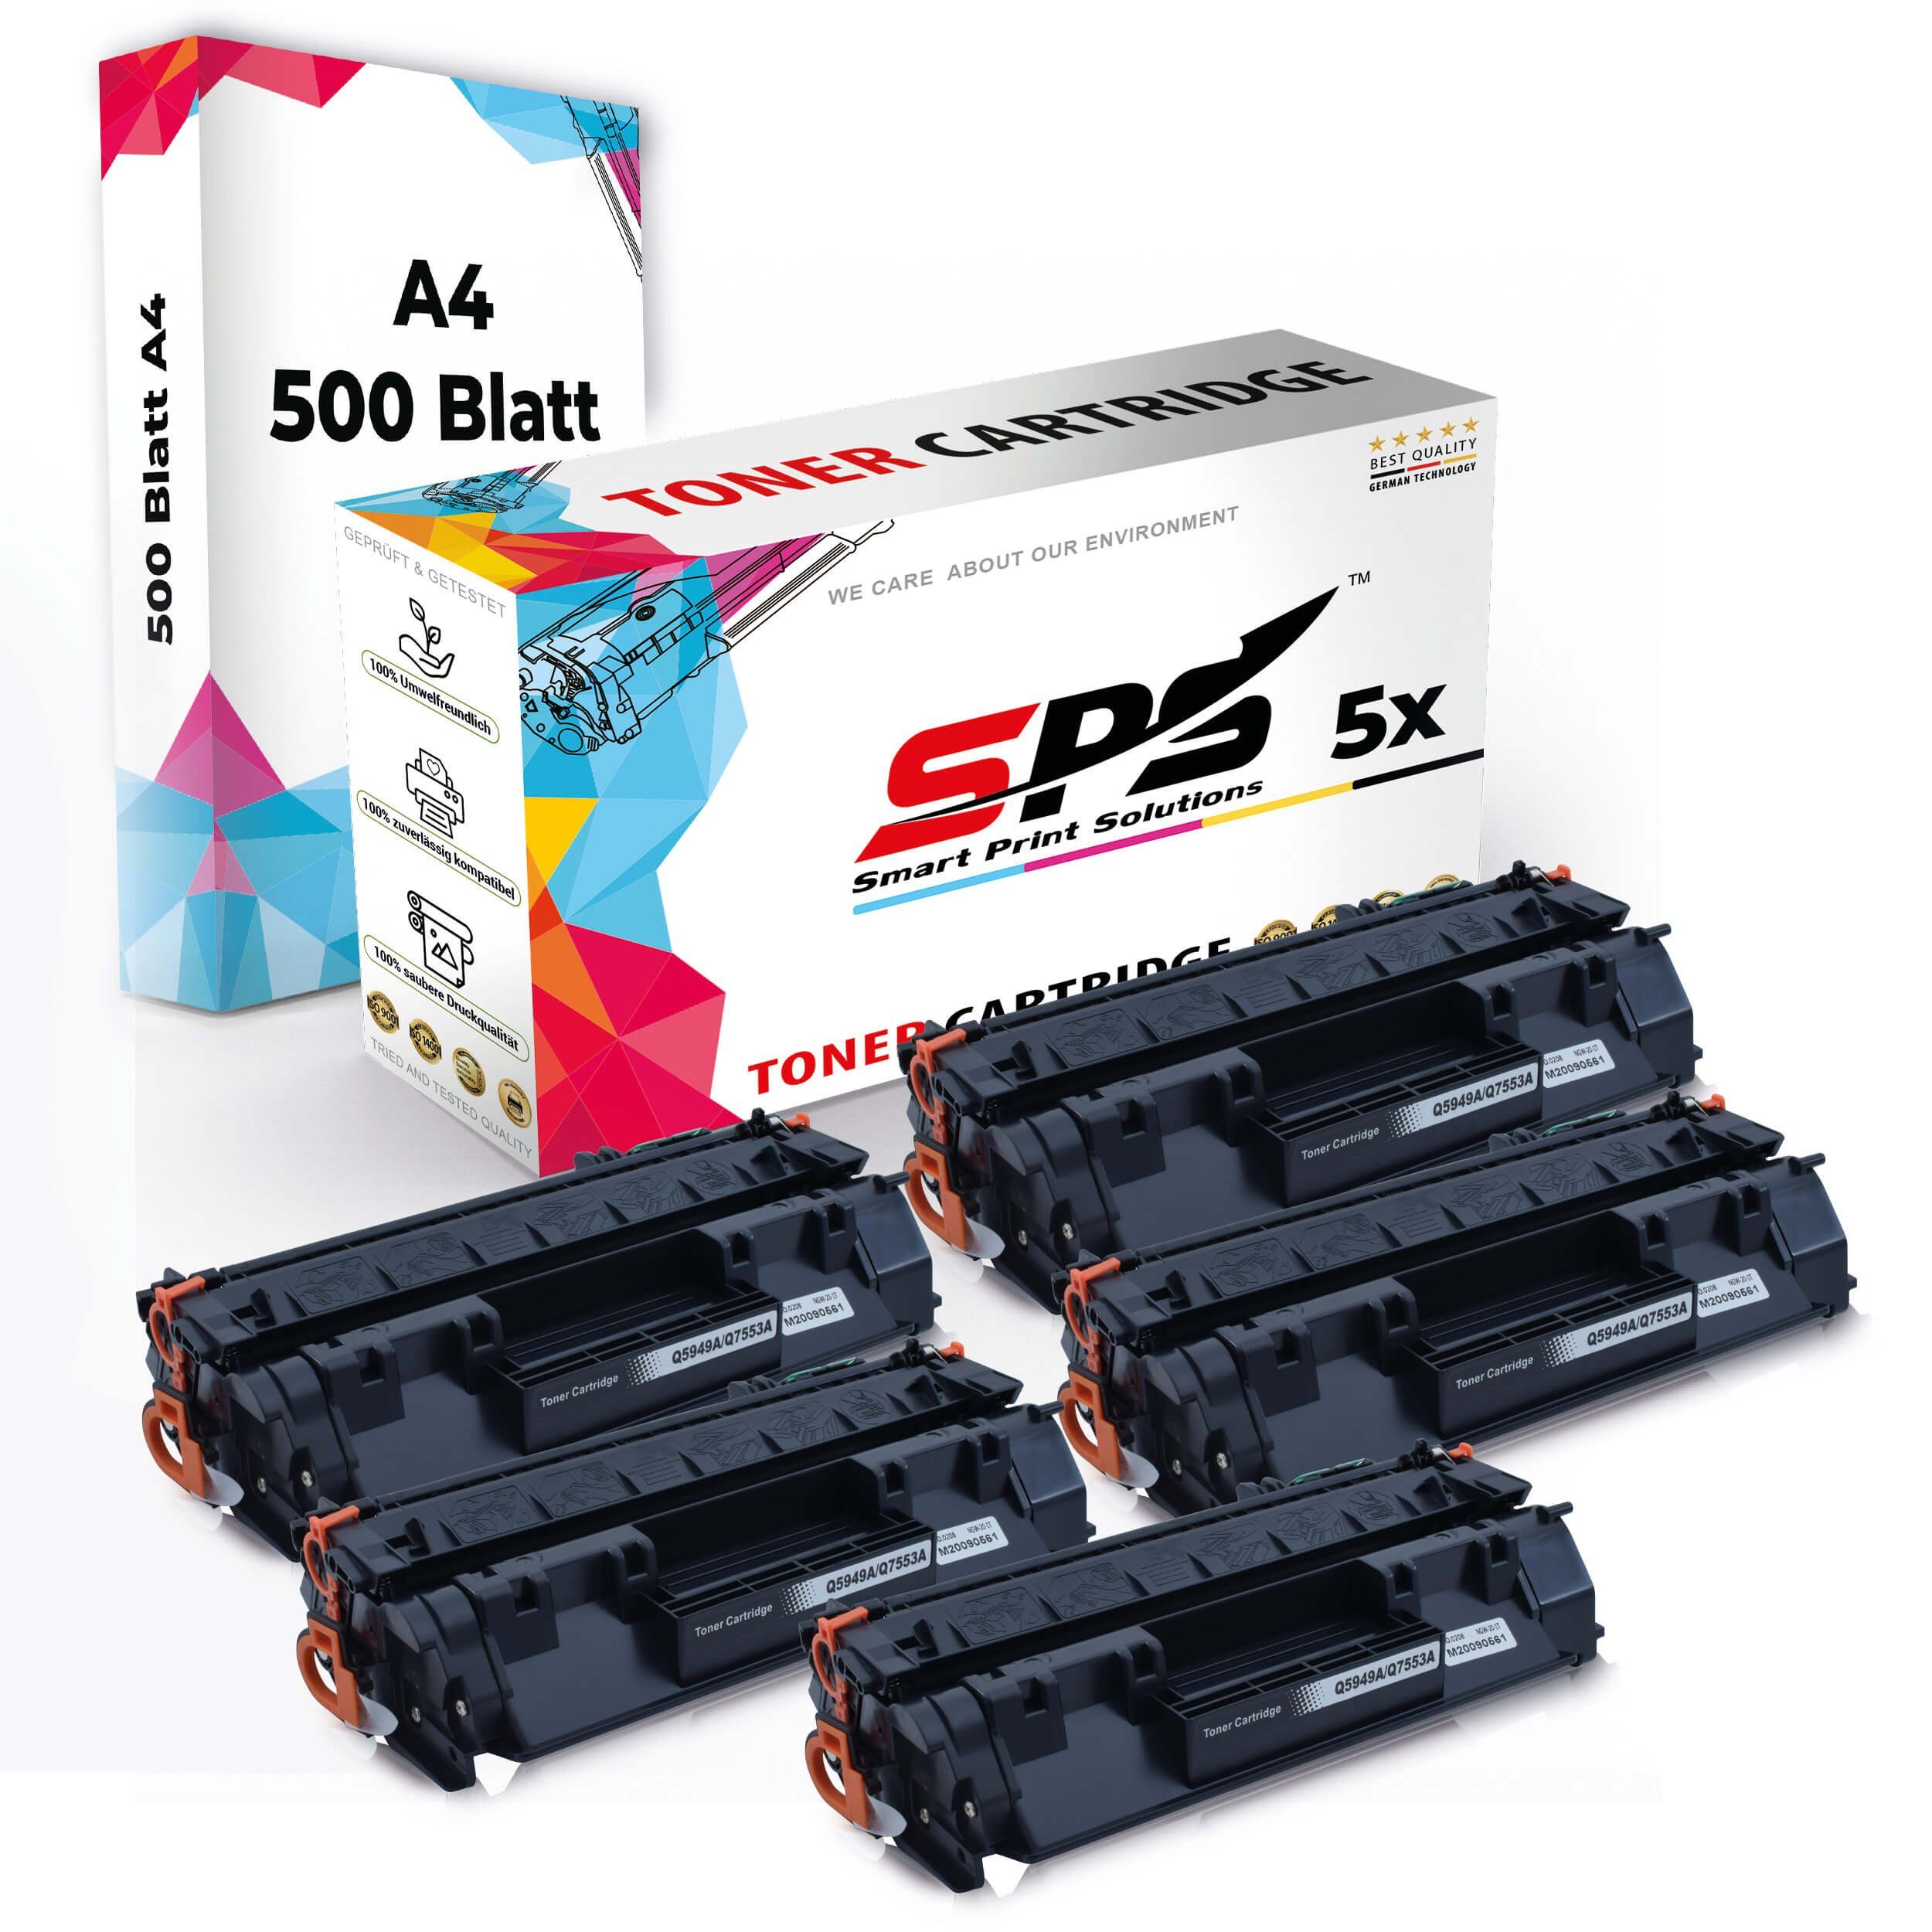 5x Multipack SPS Druckerpapier) Toner,1x Tonerkartusche + Kompatibel, Pack, A4 A4 Druckerpapier Set 5x (5er